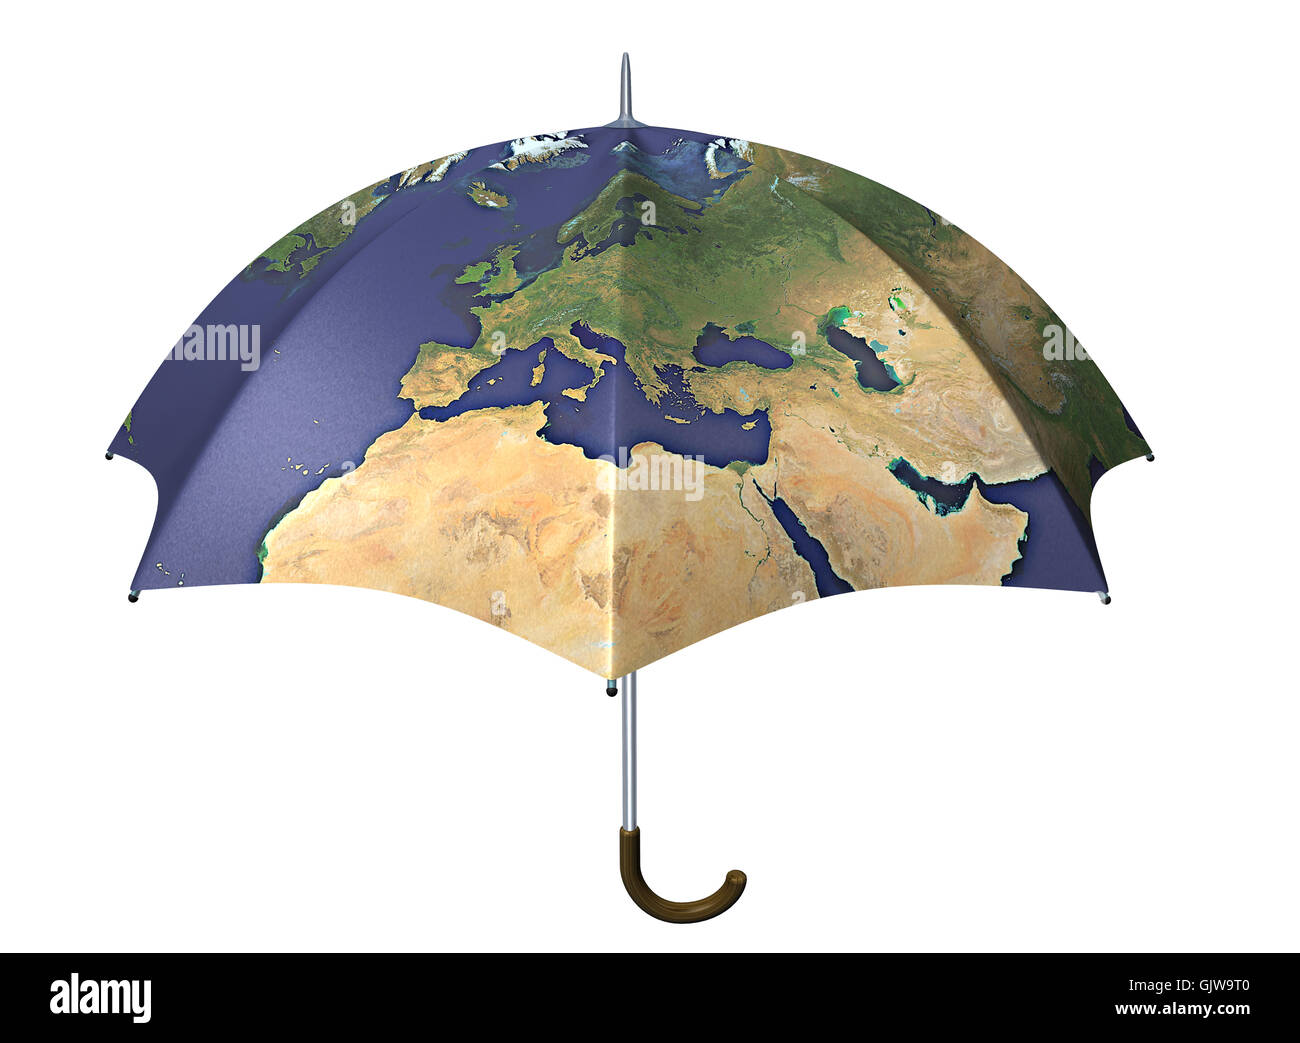 umbrella with globe imprint Stock Photo